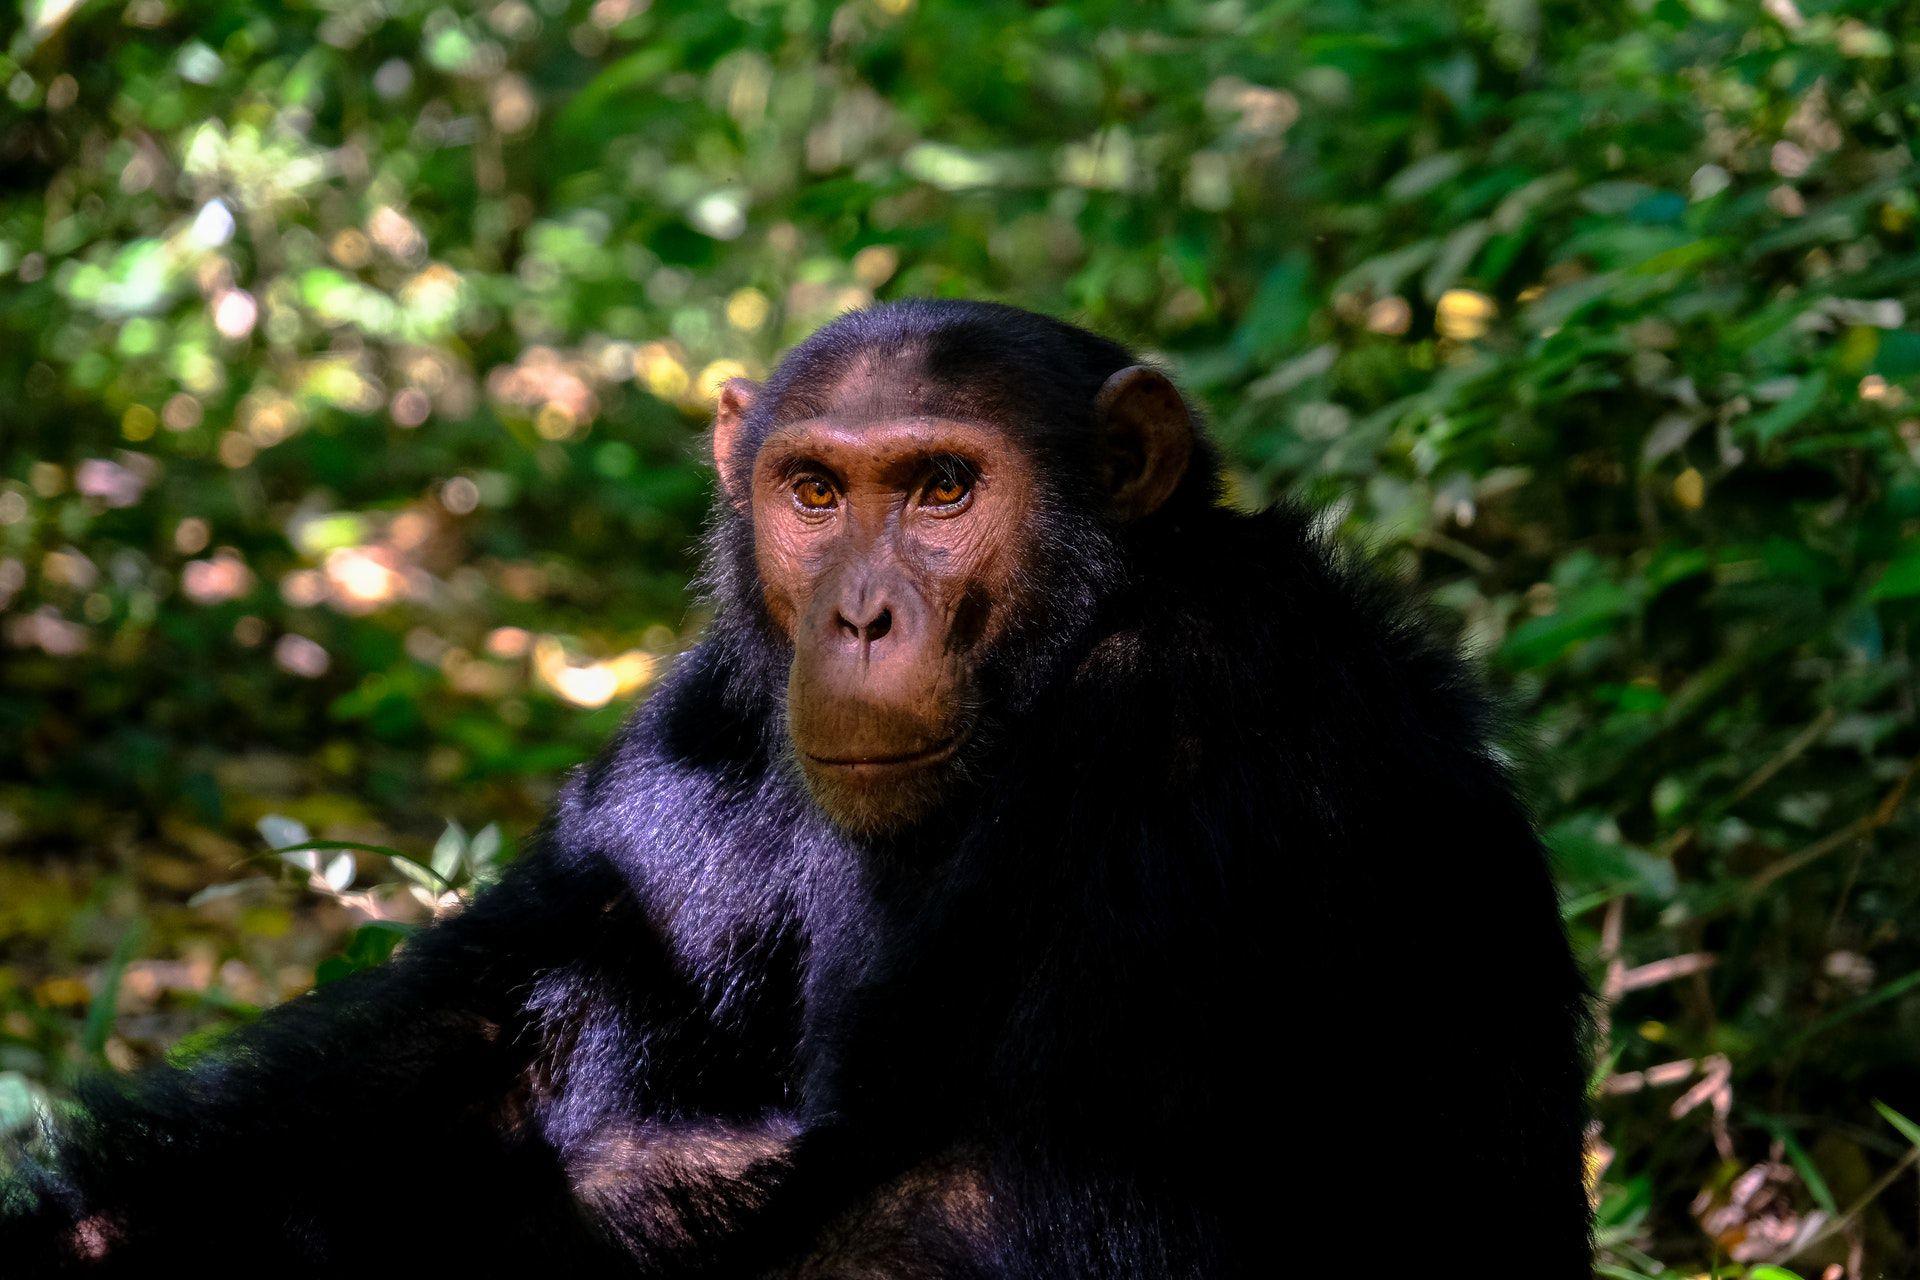 Chimpanzee trekking in Rwanda